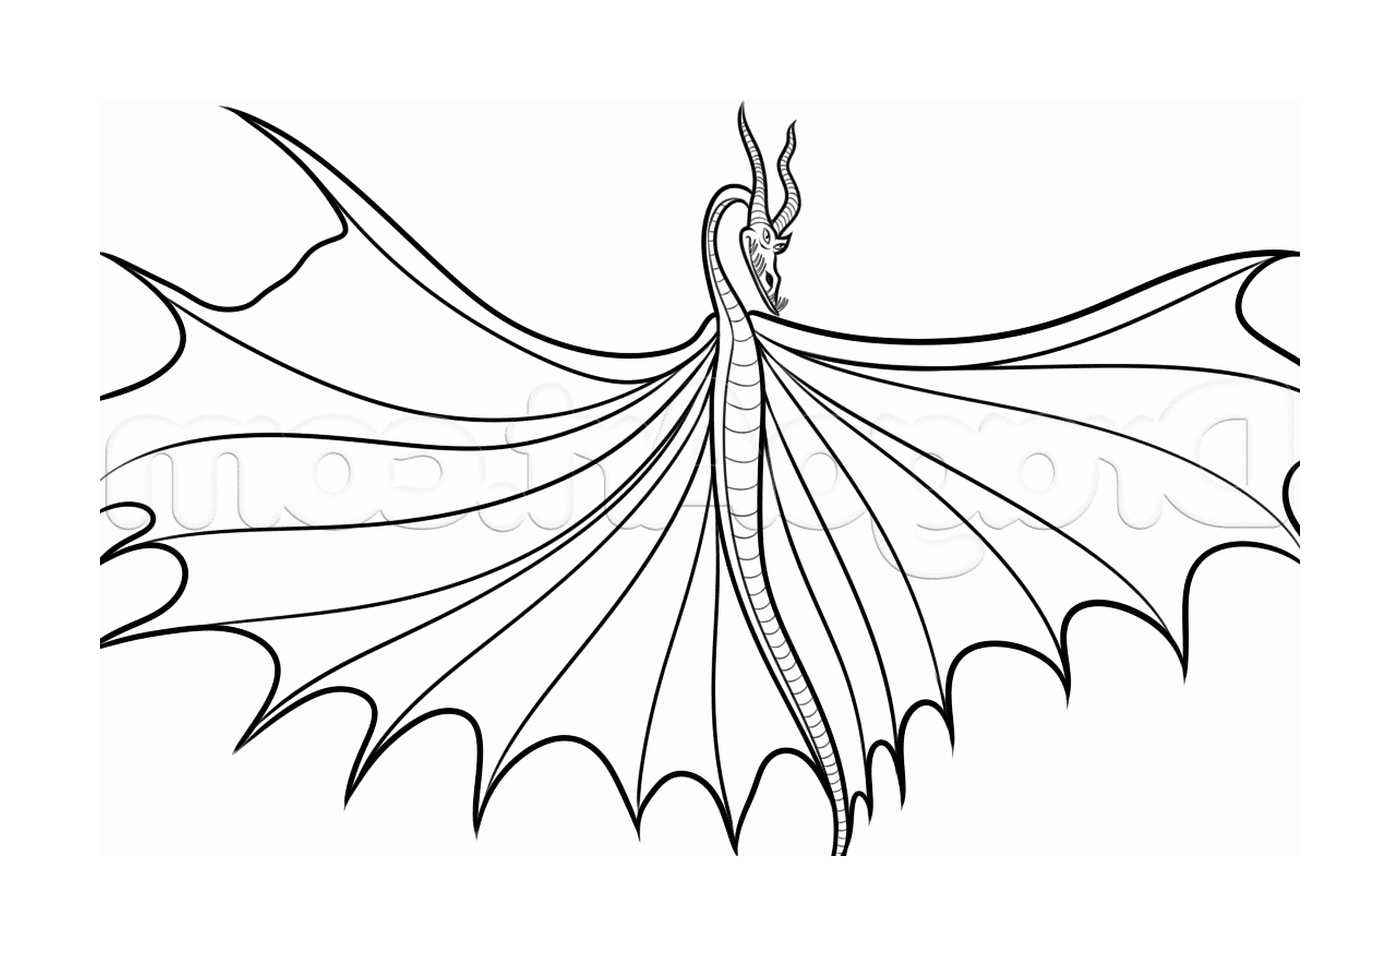  Тимберджек, дракон с развернутыми крыльями 